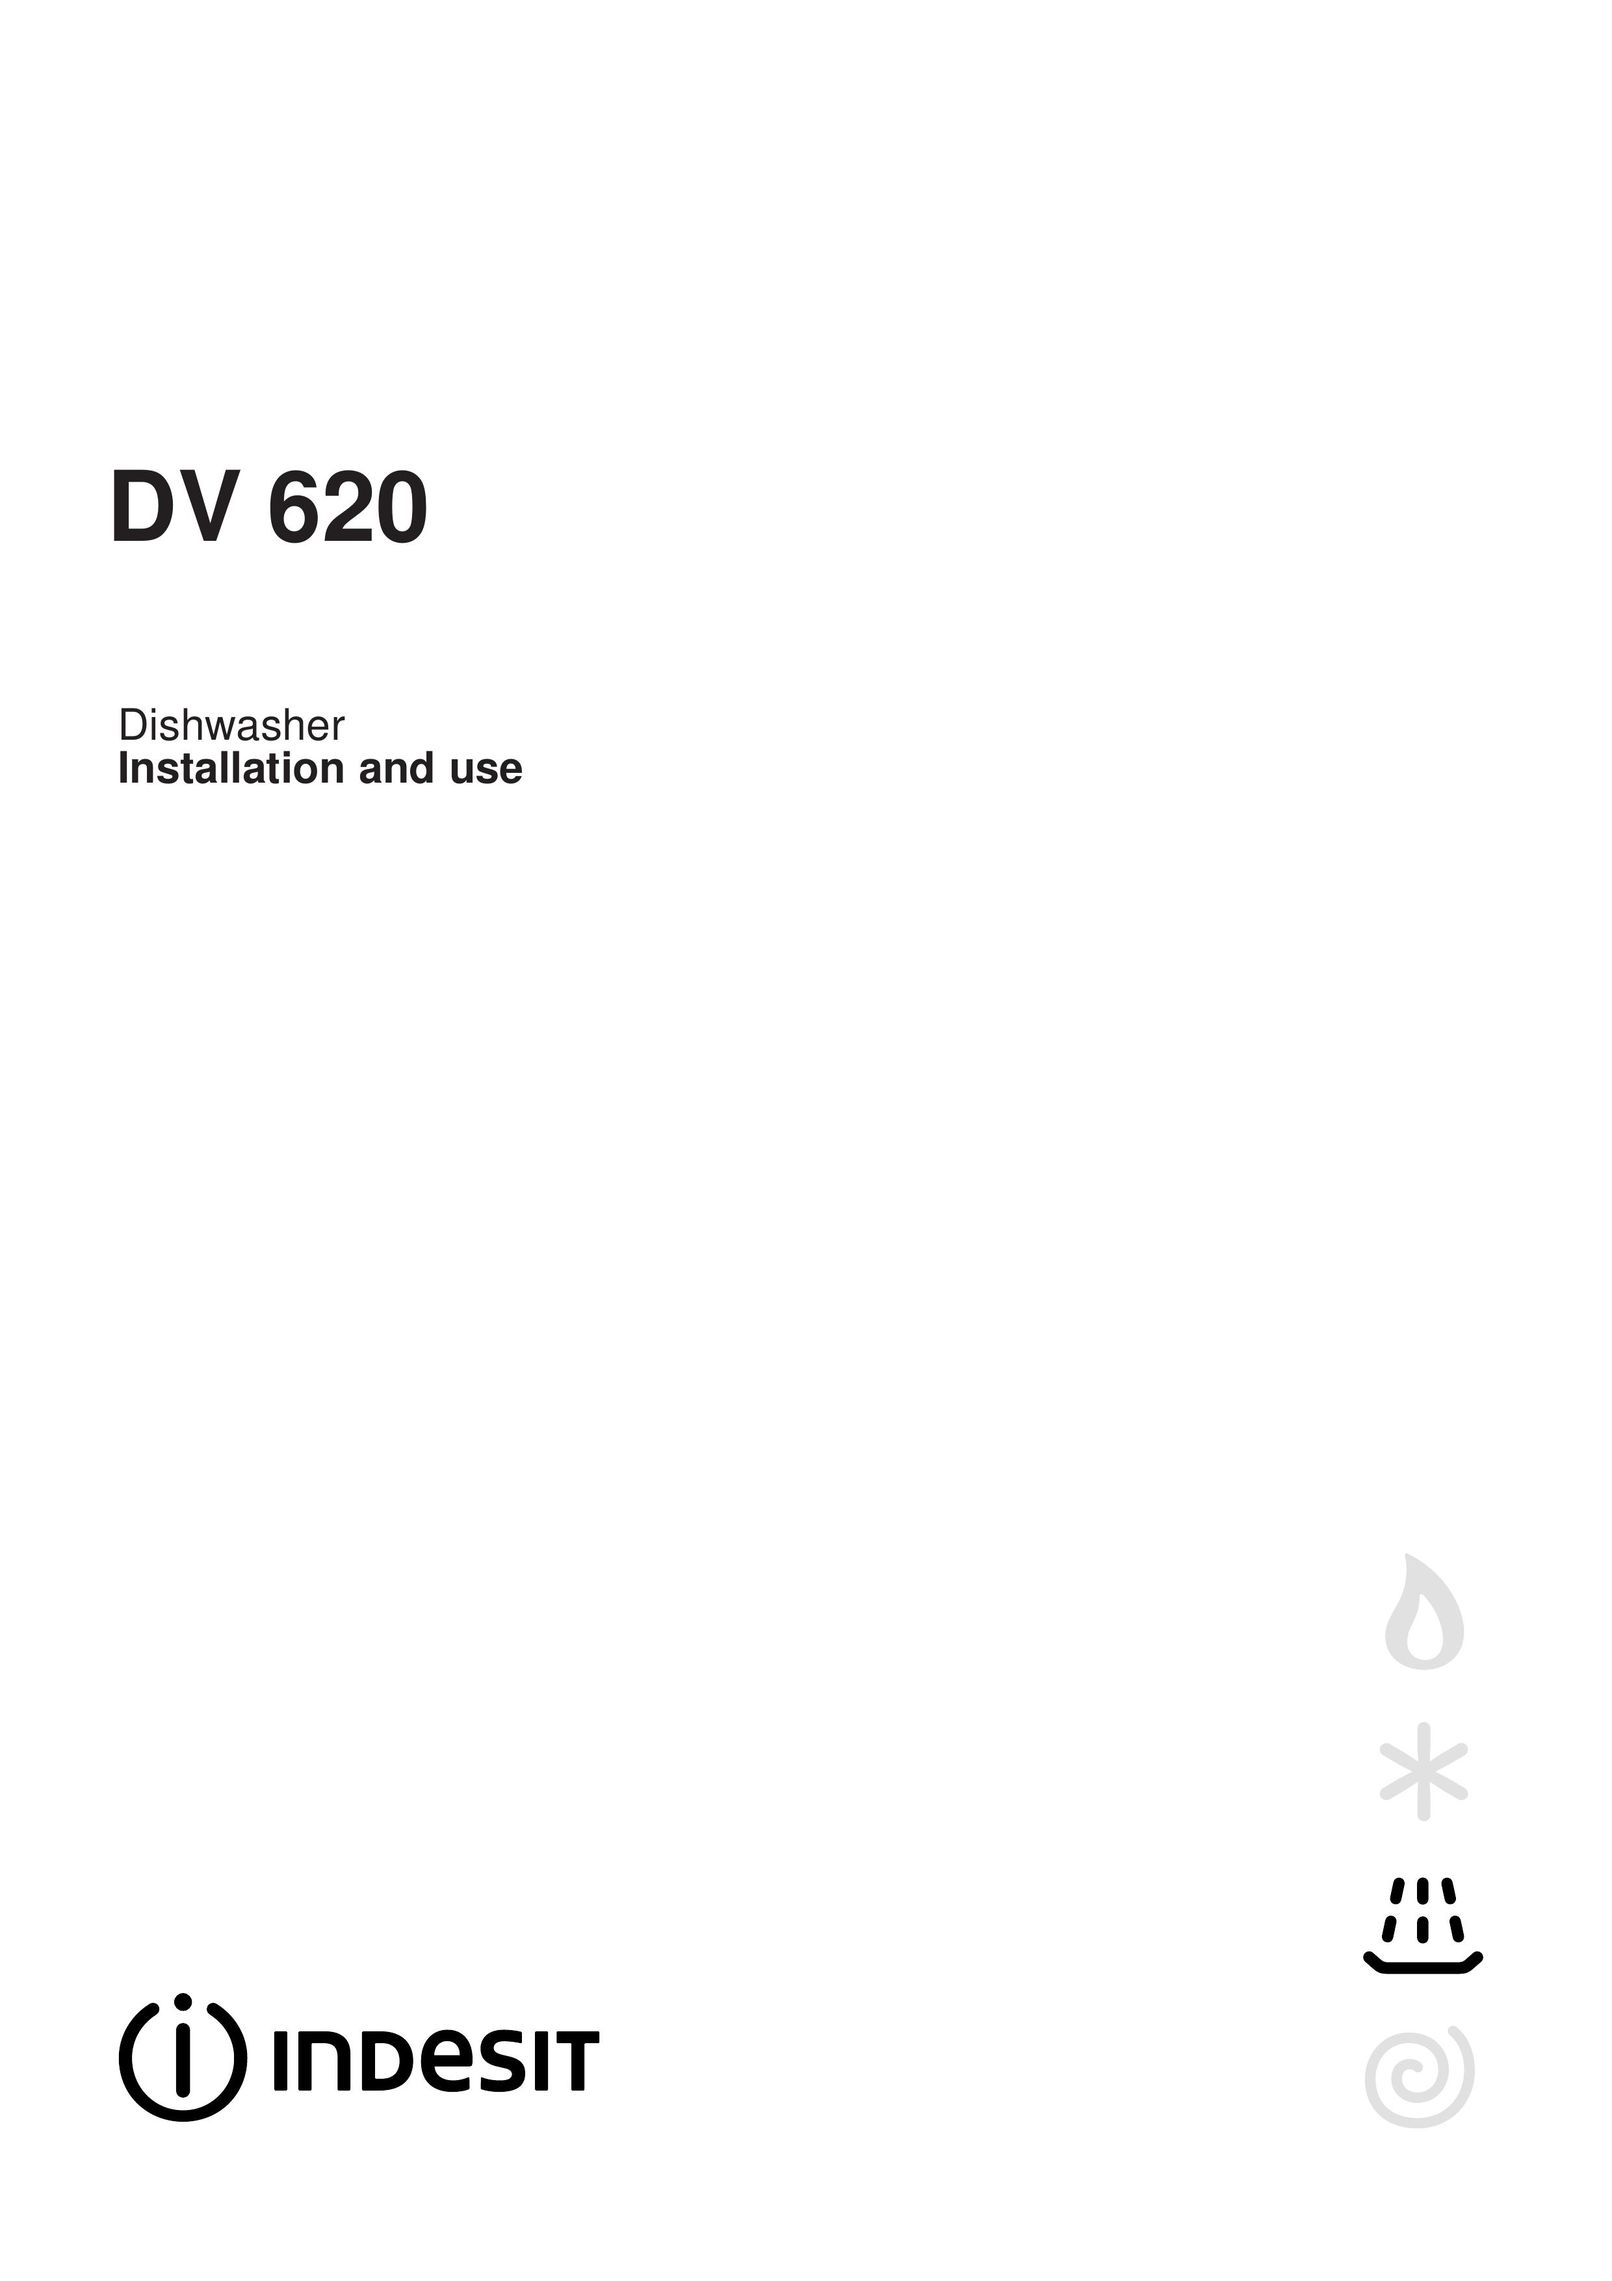 Indesit DV 620 Dishwasher User Manual